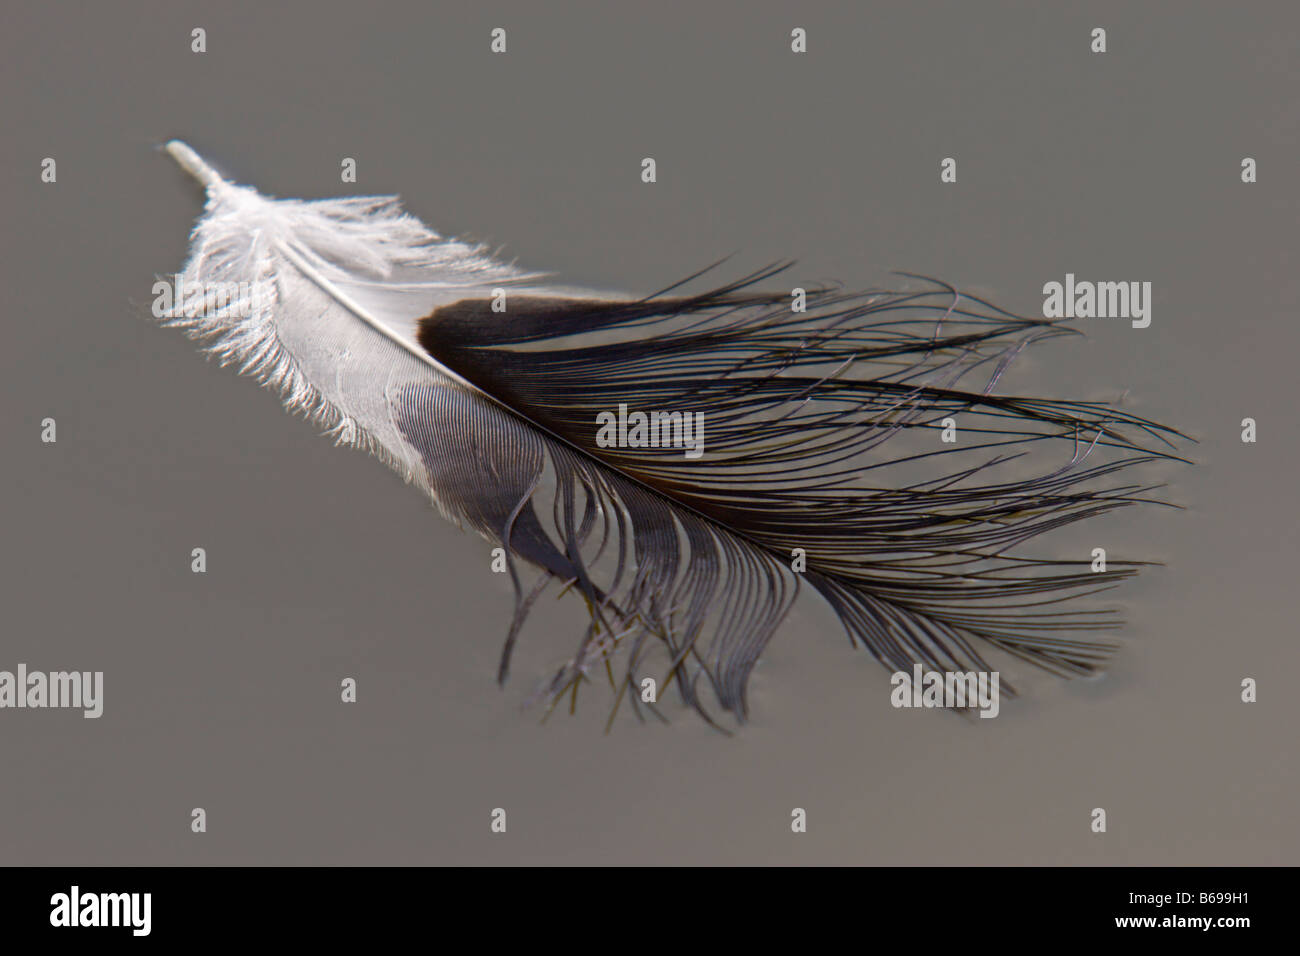 Feather flotando sobre el agua detalle de plumas de aves Foto de stock